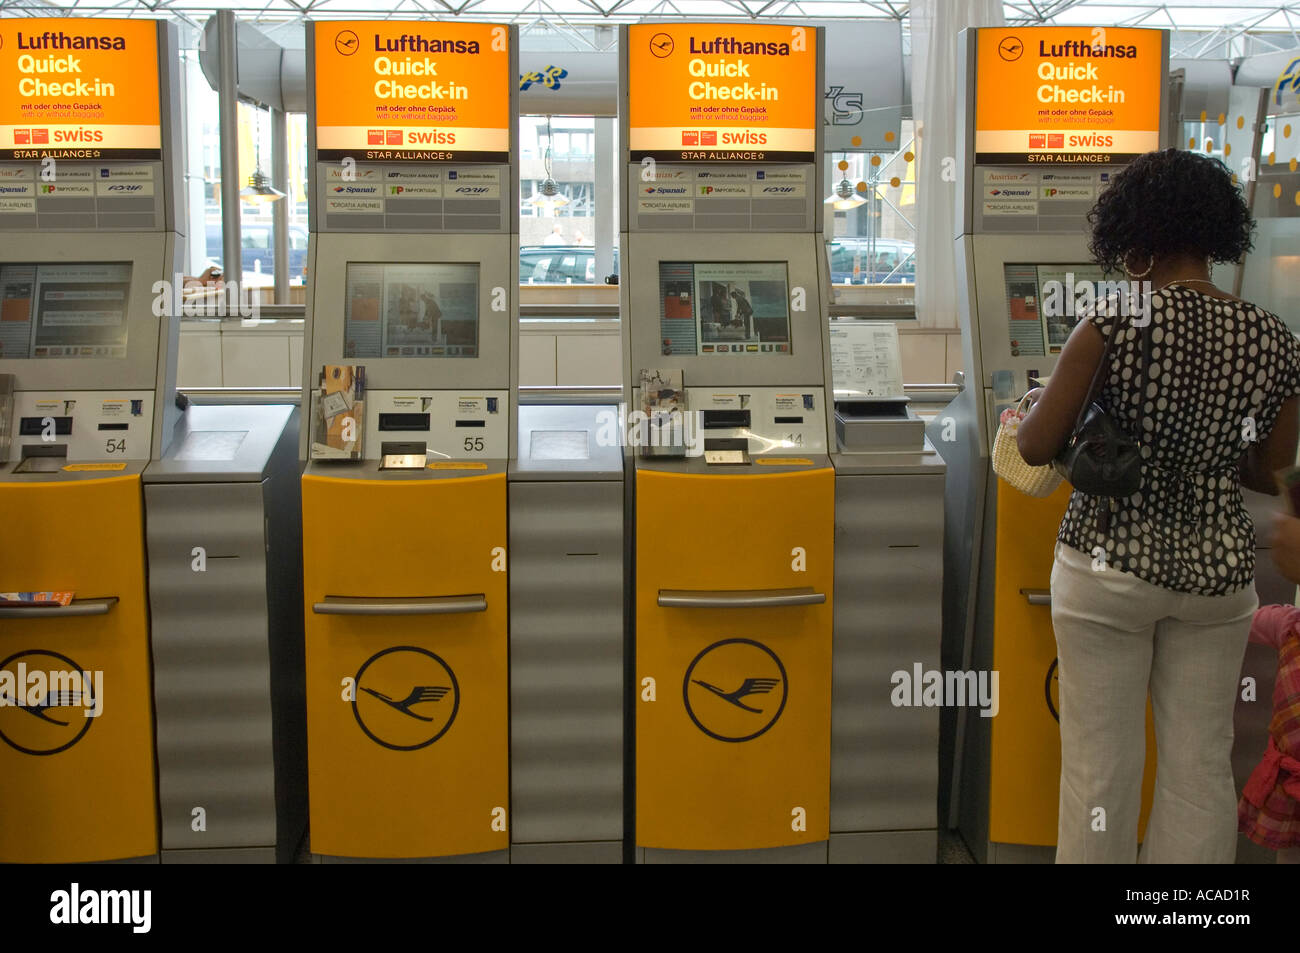 Quick Check-in Lufthansa Schalter mit Self-service, Flughafen, Deutschland Stockfoto